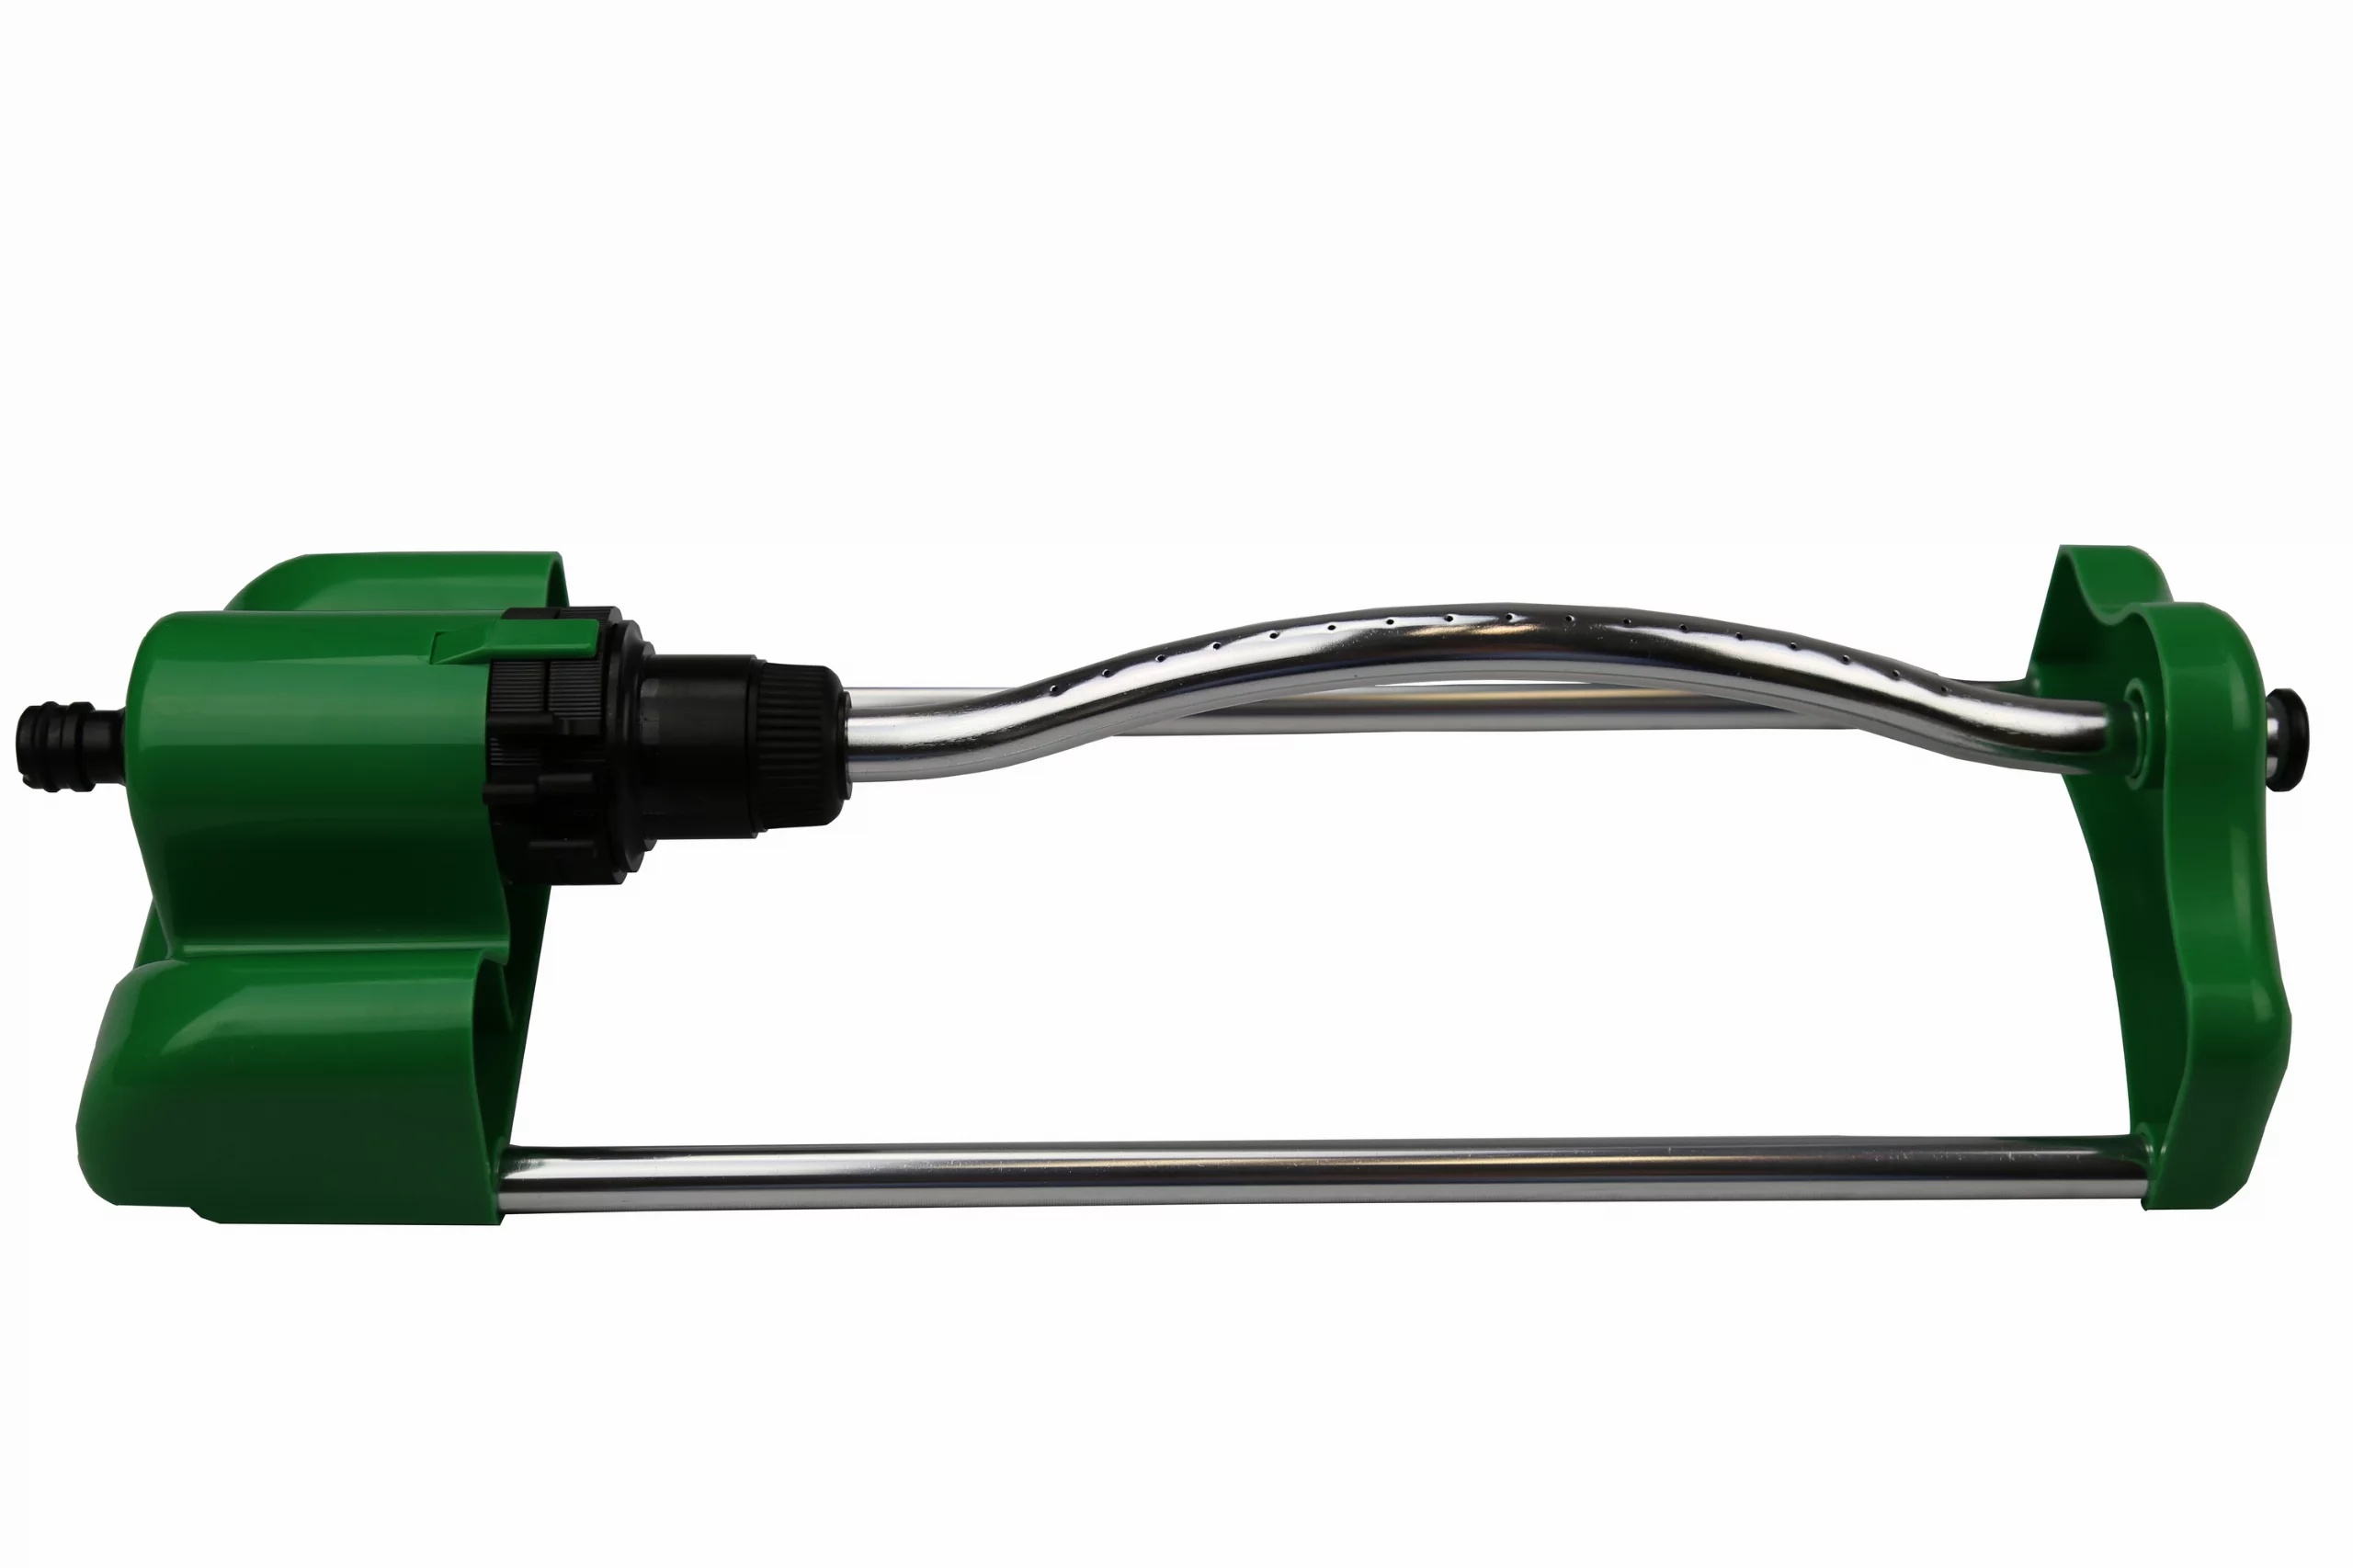 sprinkler-arroseur-automatique-système-d'arrosage-41-x-14-x-8.5cm-vert